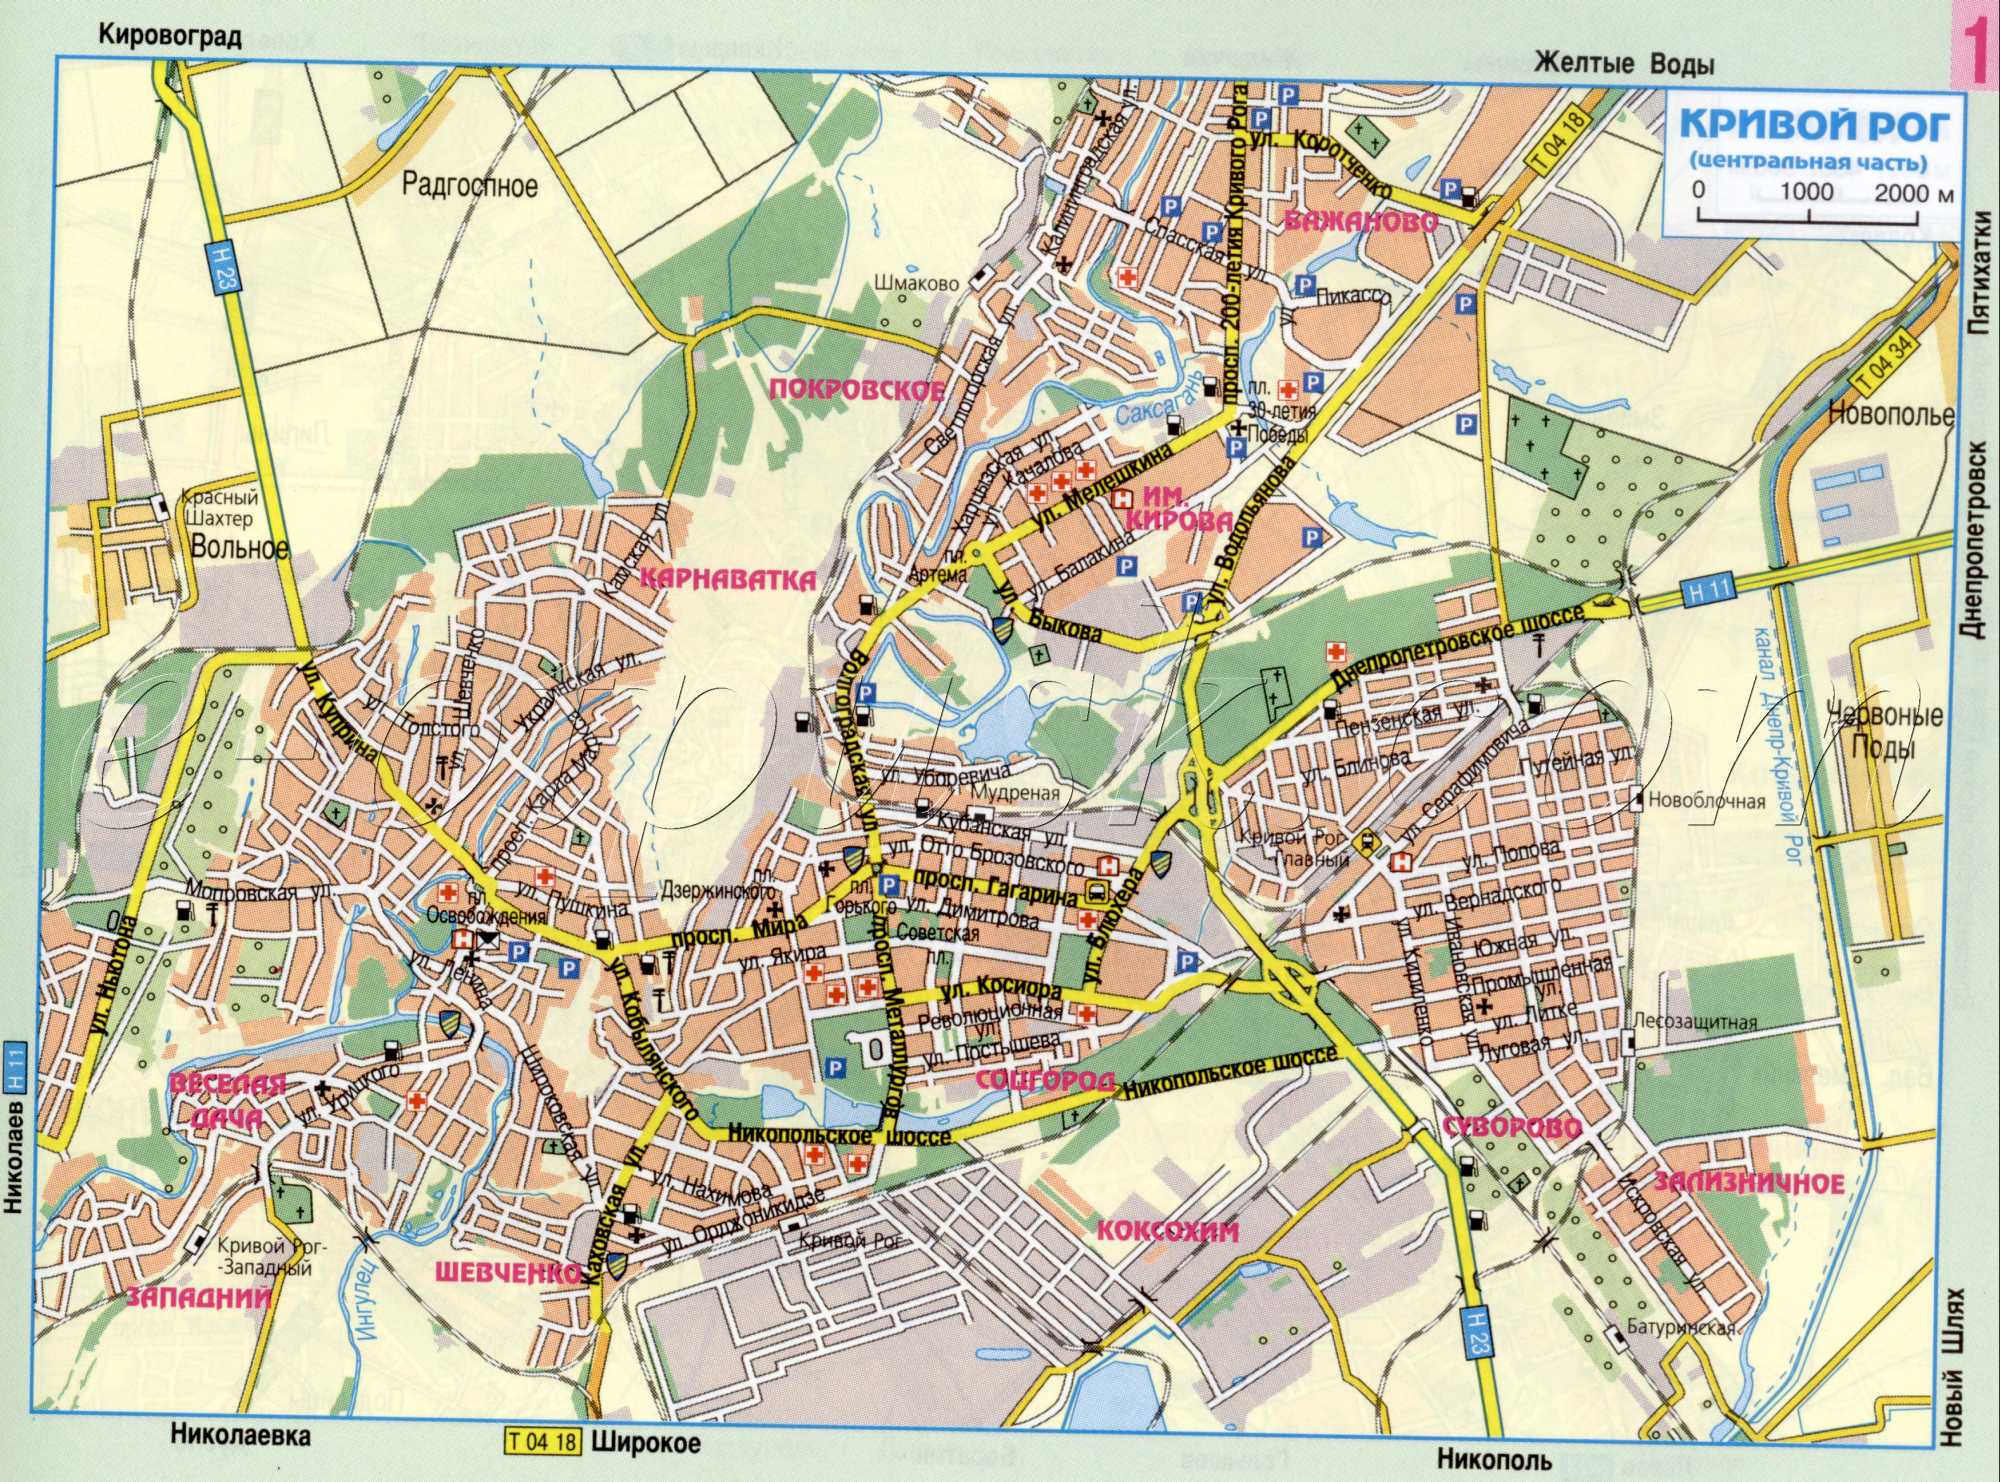 Карта Кривого Рога, Днепропетровская область. План города с указанием маршрутов транзитного проезда через Кривой Рог. скачать бесплатно